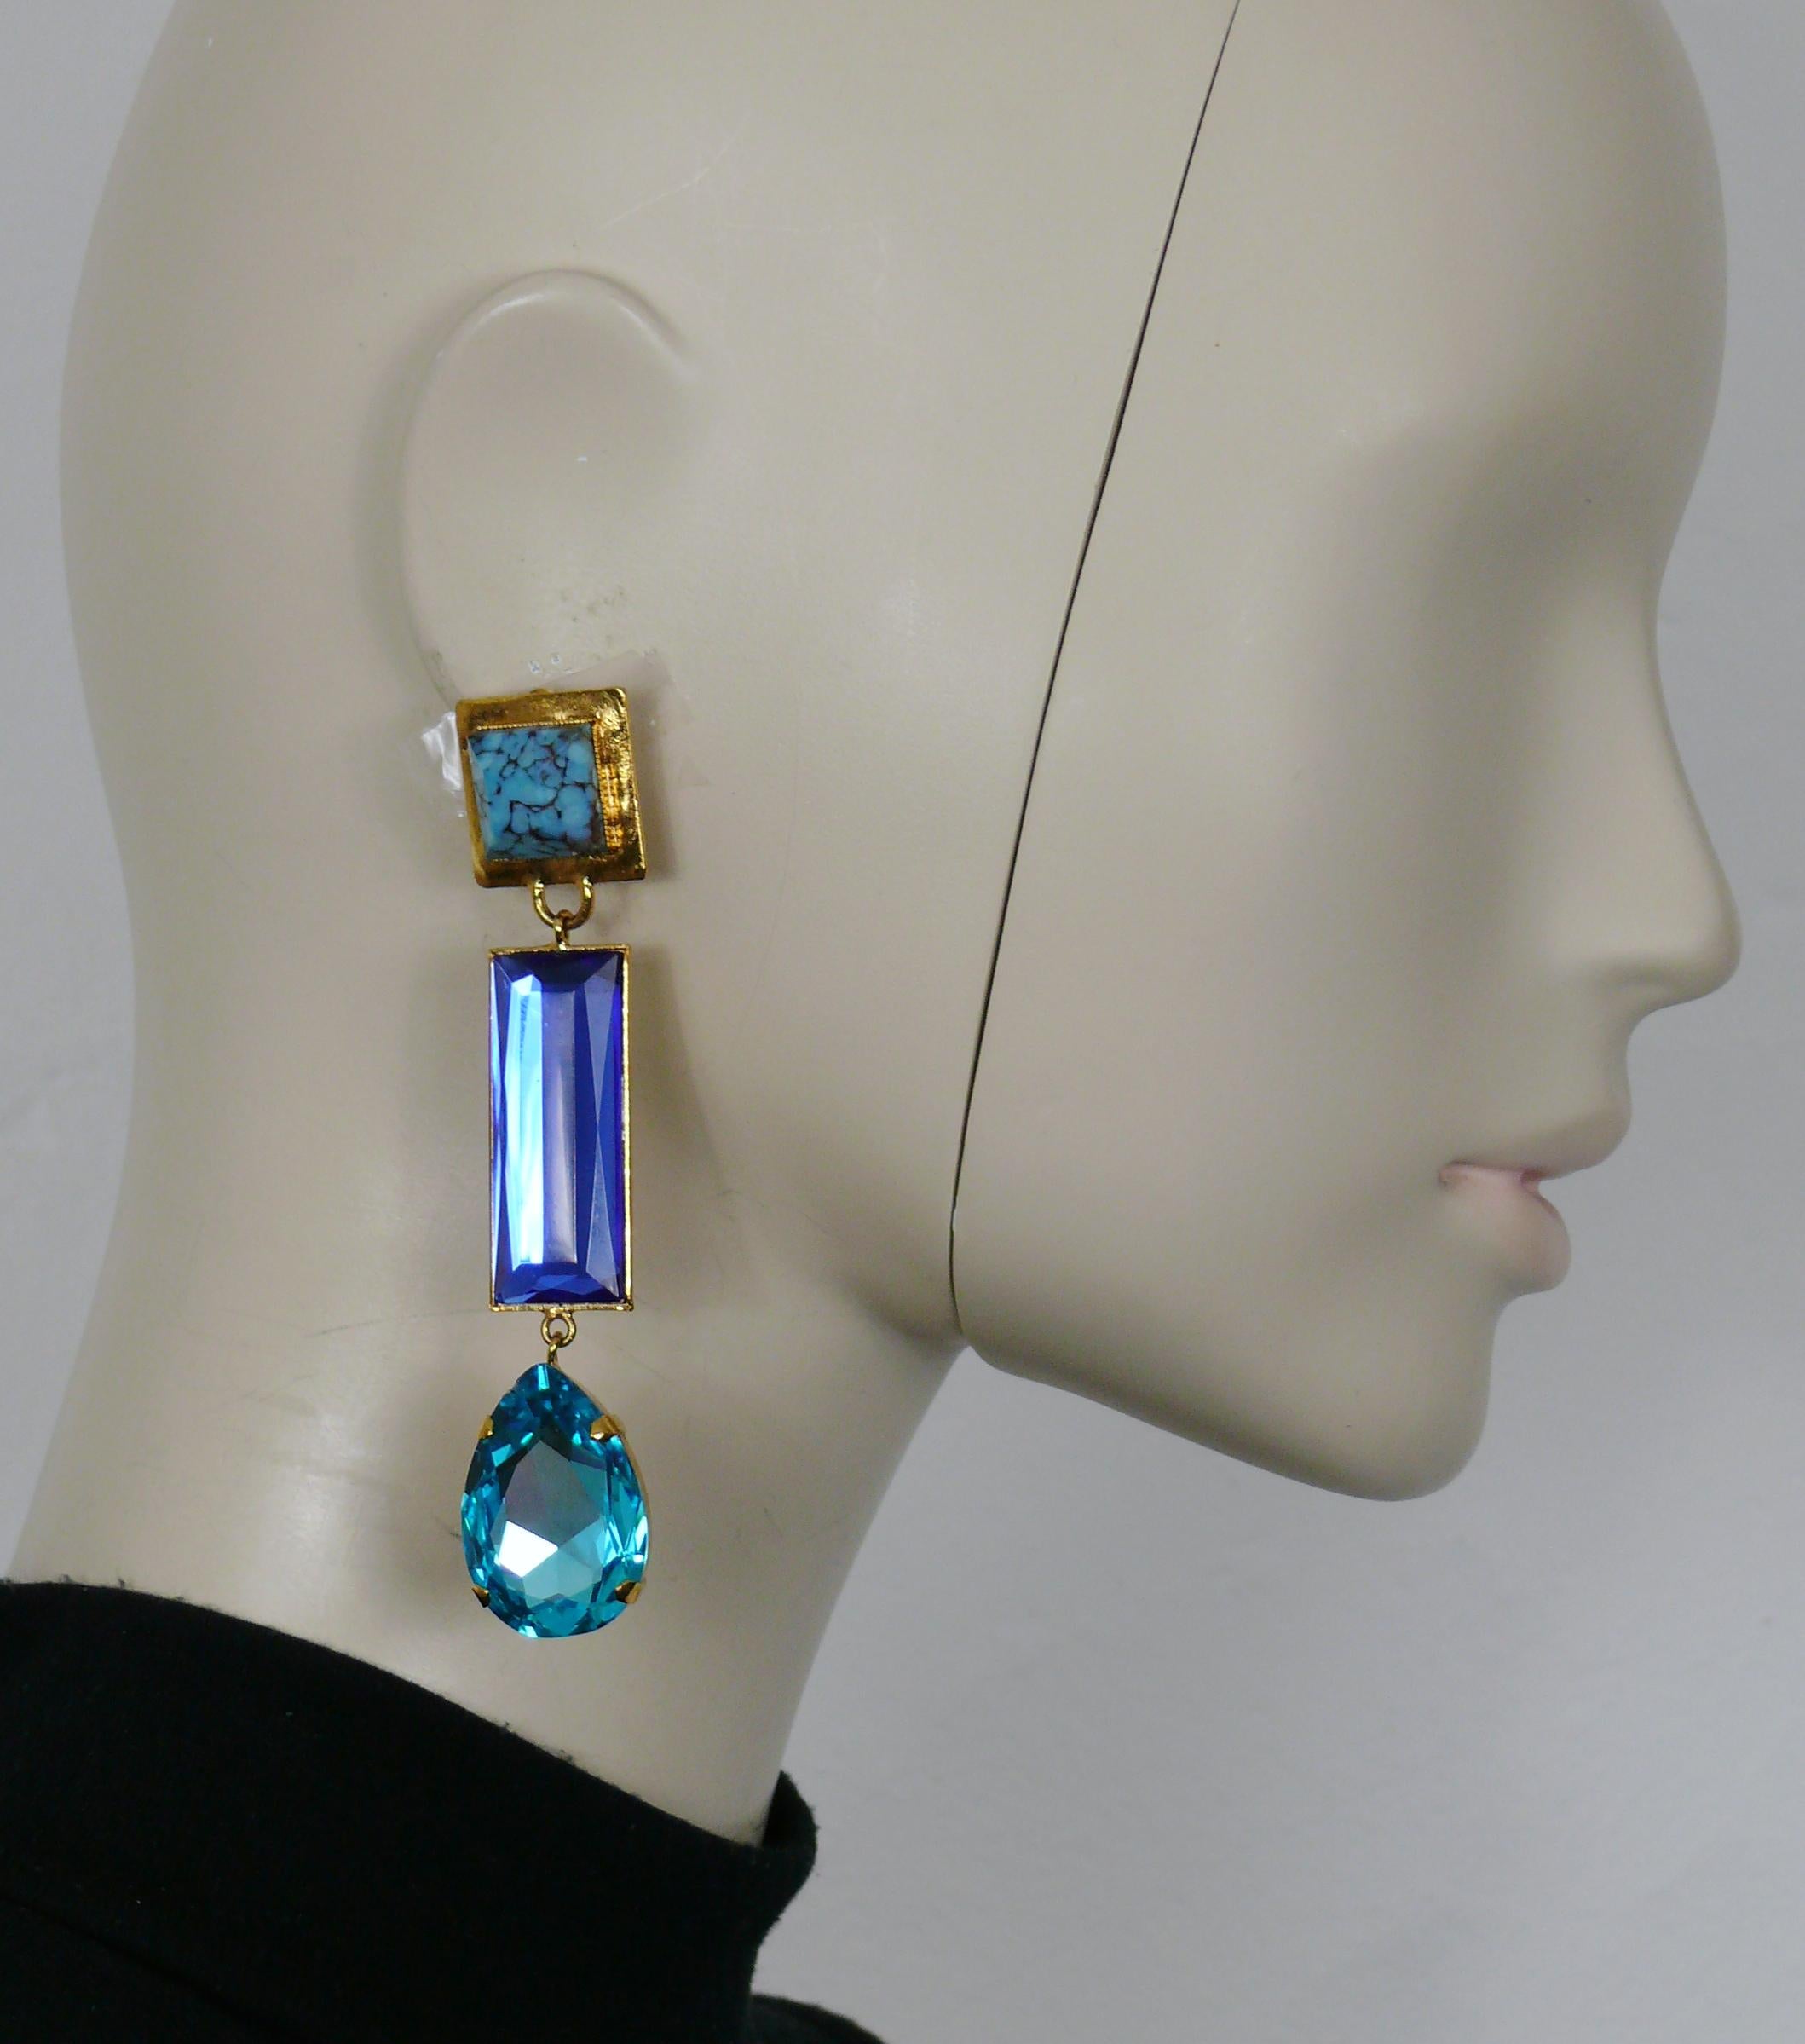 YVES SAINT LAURENT vintage goldfarbene Ohrringe (Clip-on) mit einem Cabochon aus falschem Türkis und blauen Kristallen.

Geprägtes YSL.

Ungefähre Maße: Höhe ca. 10 cm (3,94 Zoll) / max. Breite ca. 2 cm (0,79 Zoll).

Gewicht pro Ohrring: ca. 25